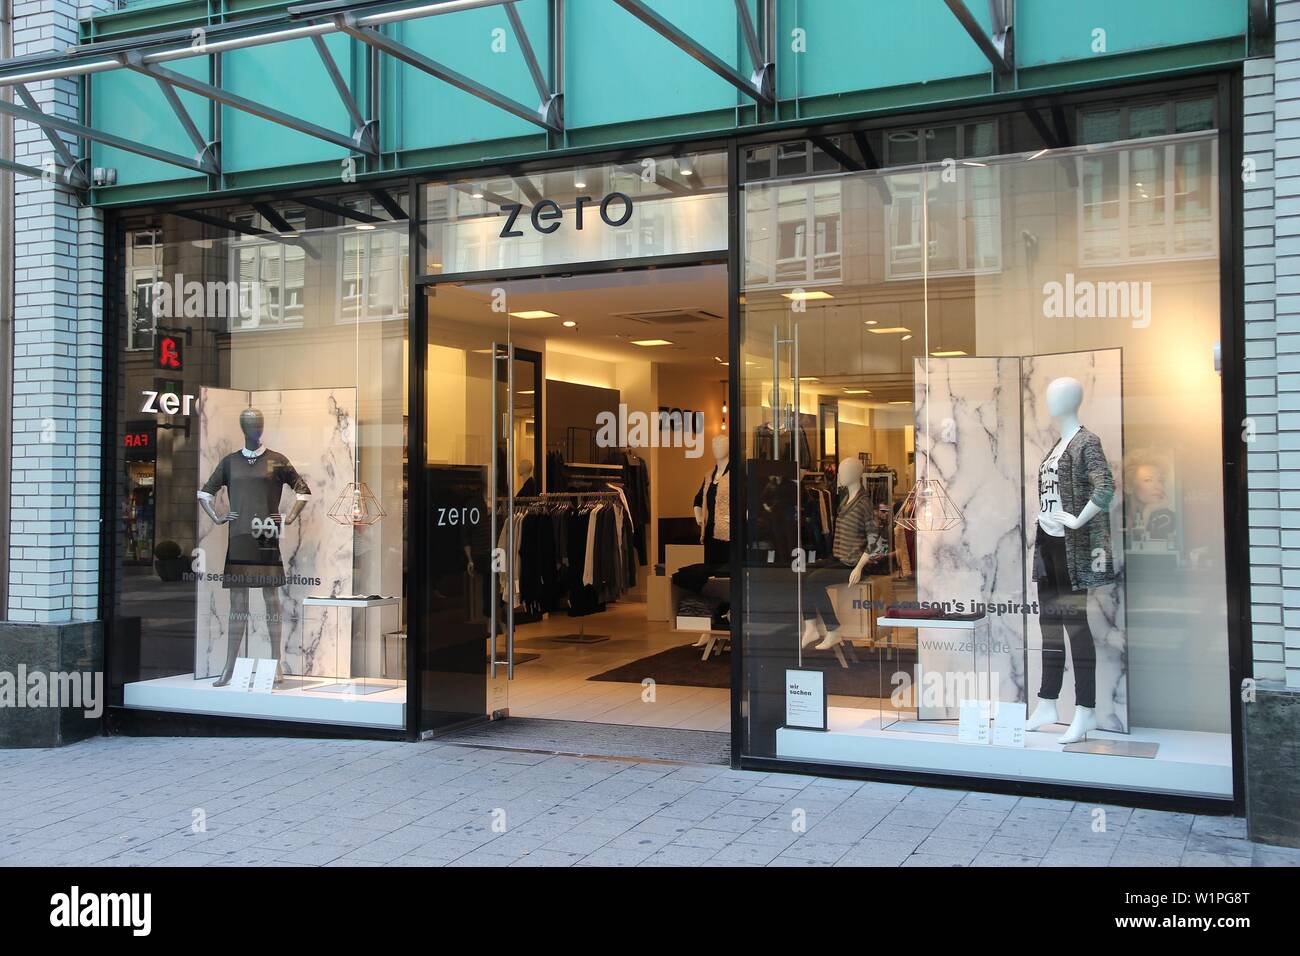 HAMBURG, DEUTSCHLAND - 28. AUGUST 2014: Null fashion shop in der Spitalerstrasse Straße, Hamburg. Die Fußgängerzone der Spitalerstrasse ist einer der beliebtesten Sh Stockfoto